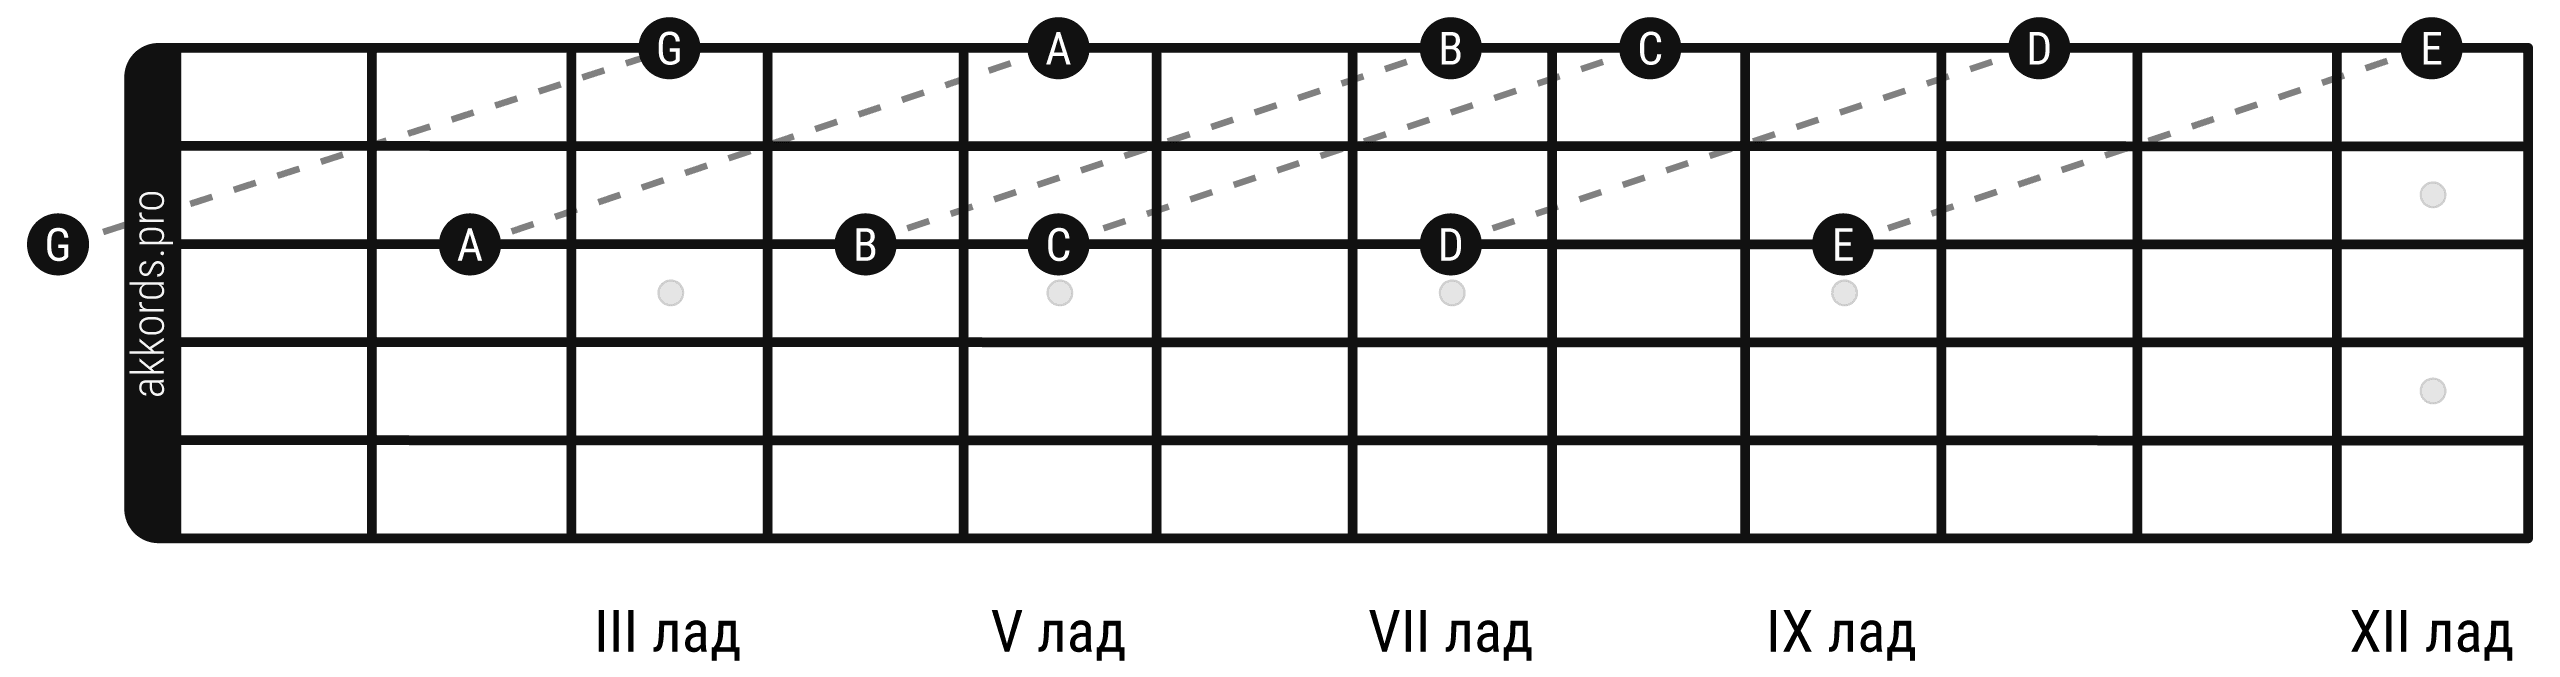 Ноты на грифе гитары: расположение нот на 1 струне